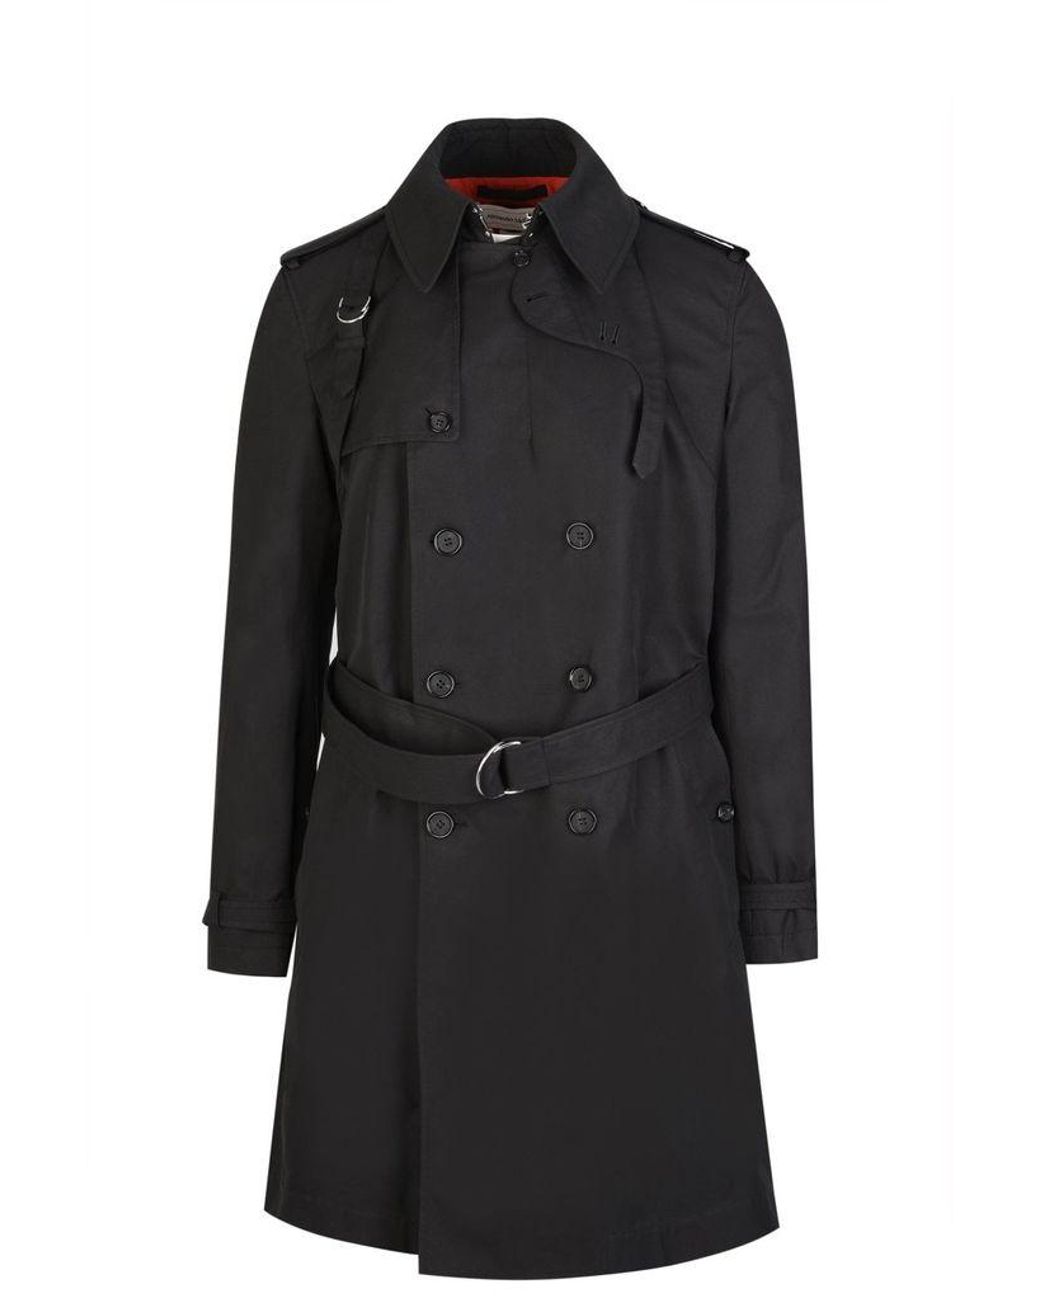 Alexander McQueen Cotton Harness Trench Coat in Black - Lyst